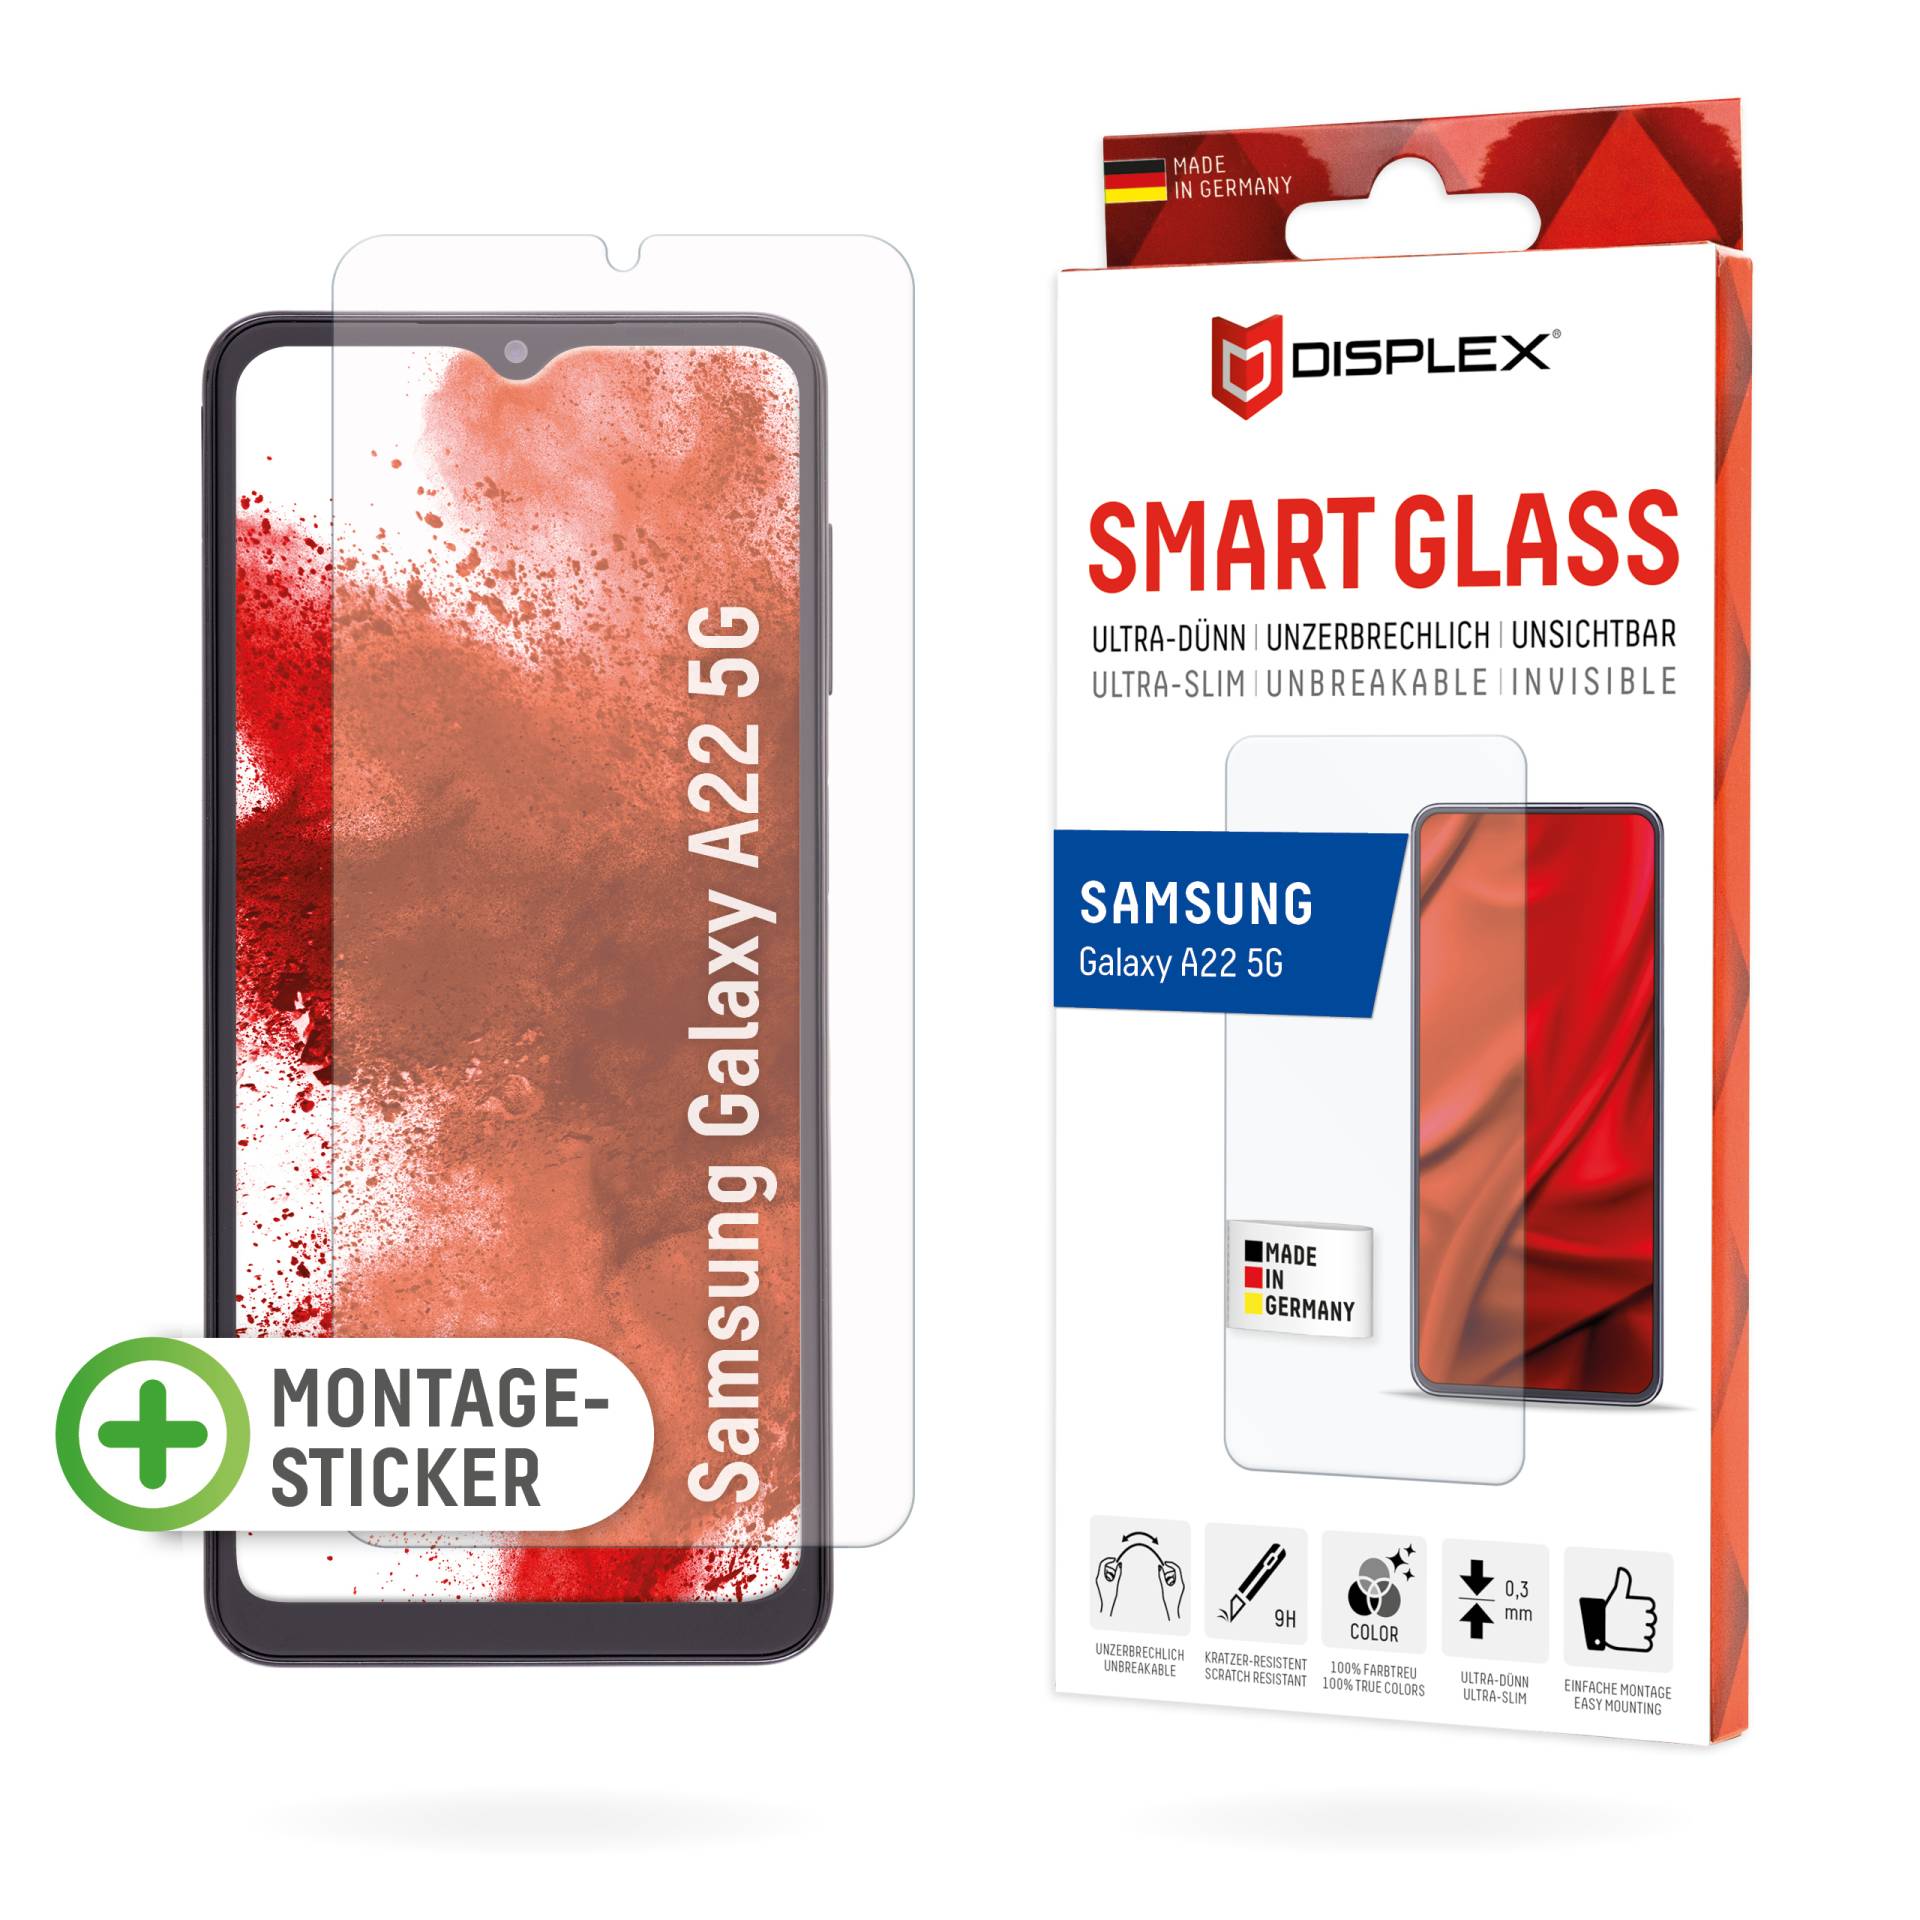 DISPLEX Smart Glass (9H) für Samsung Galaxy A22 5G Montagesticker, unzerbrechlich, ultra-dünn, unsichtbar von Displex